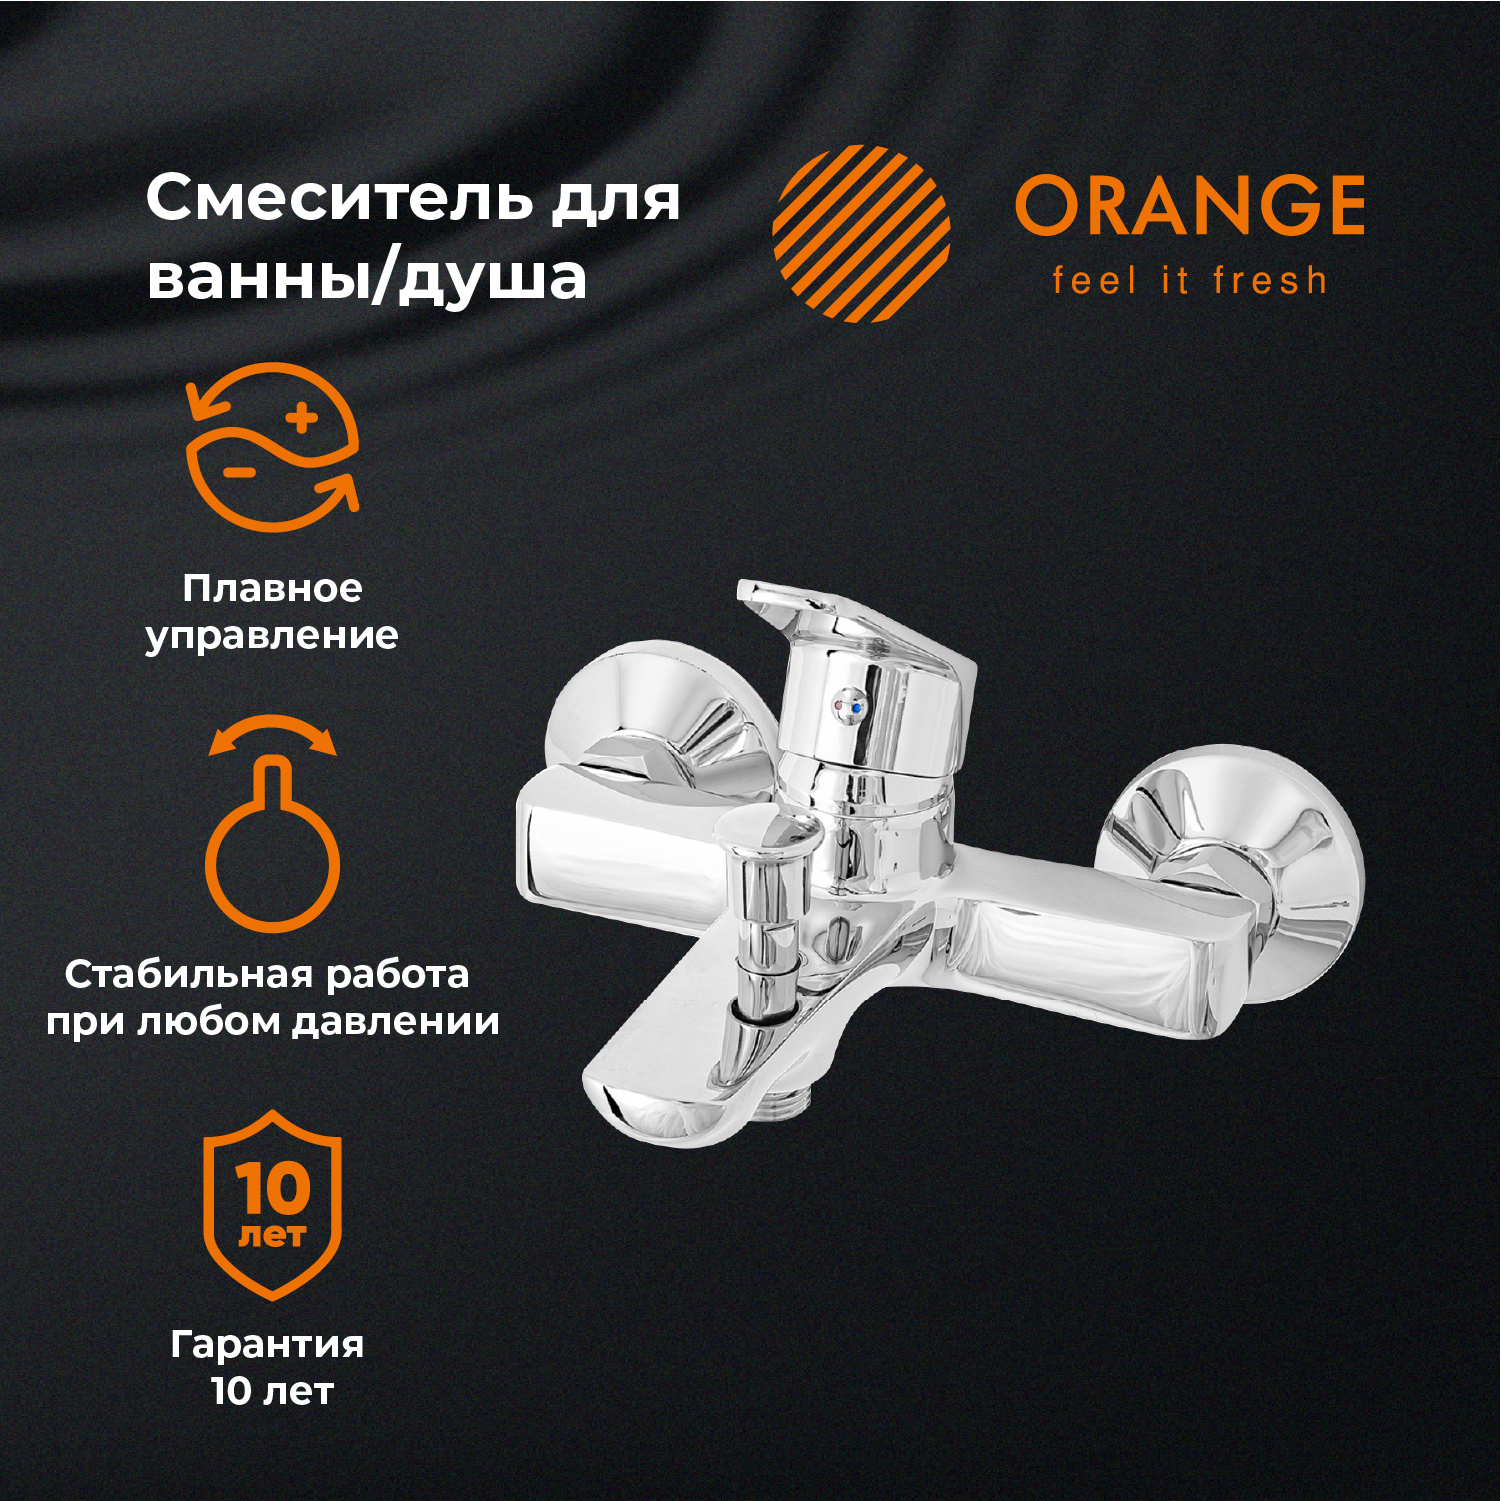 Смеситель для ванны и душа Orange FELIX M14-100cr цвет хром автоконсервант порогов felix